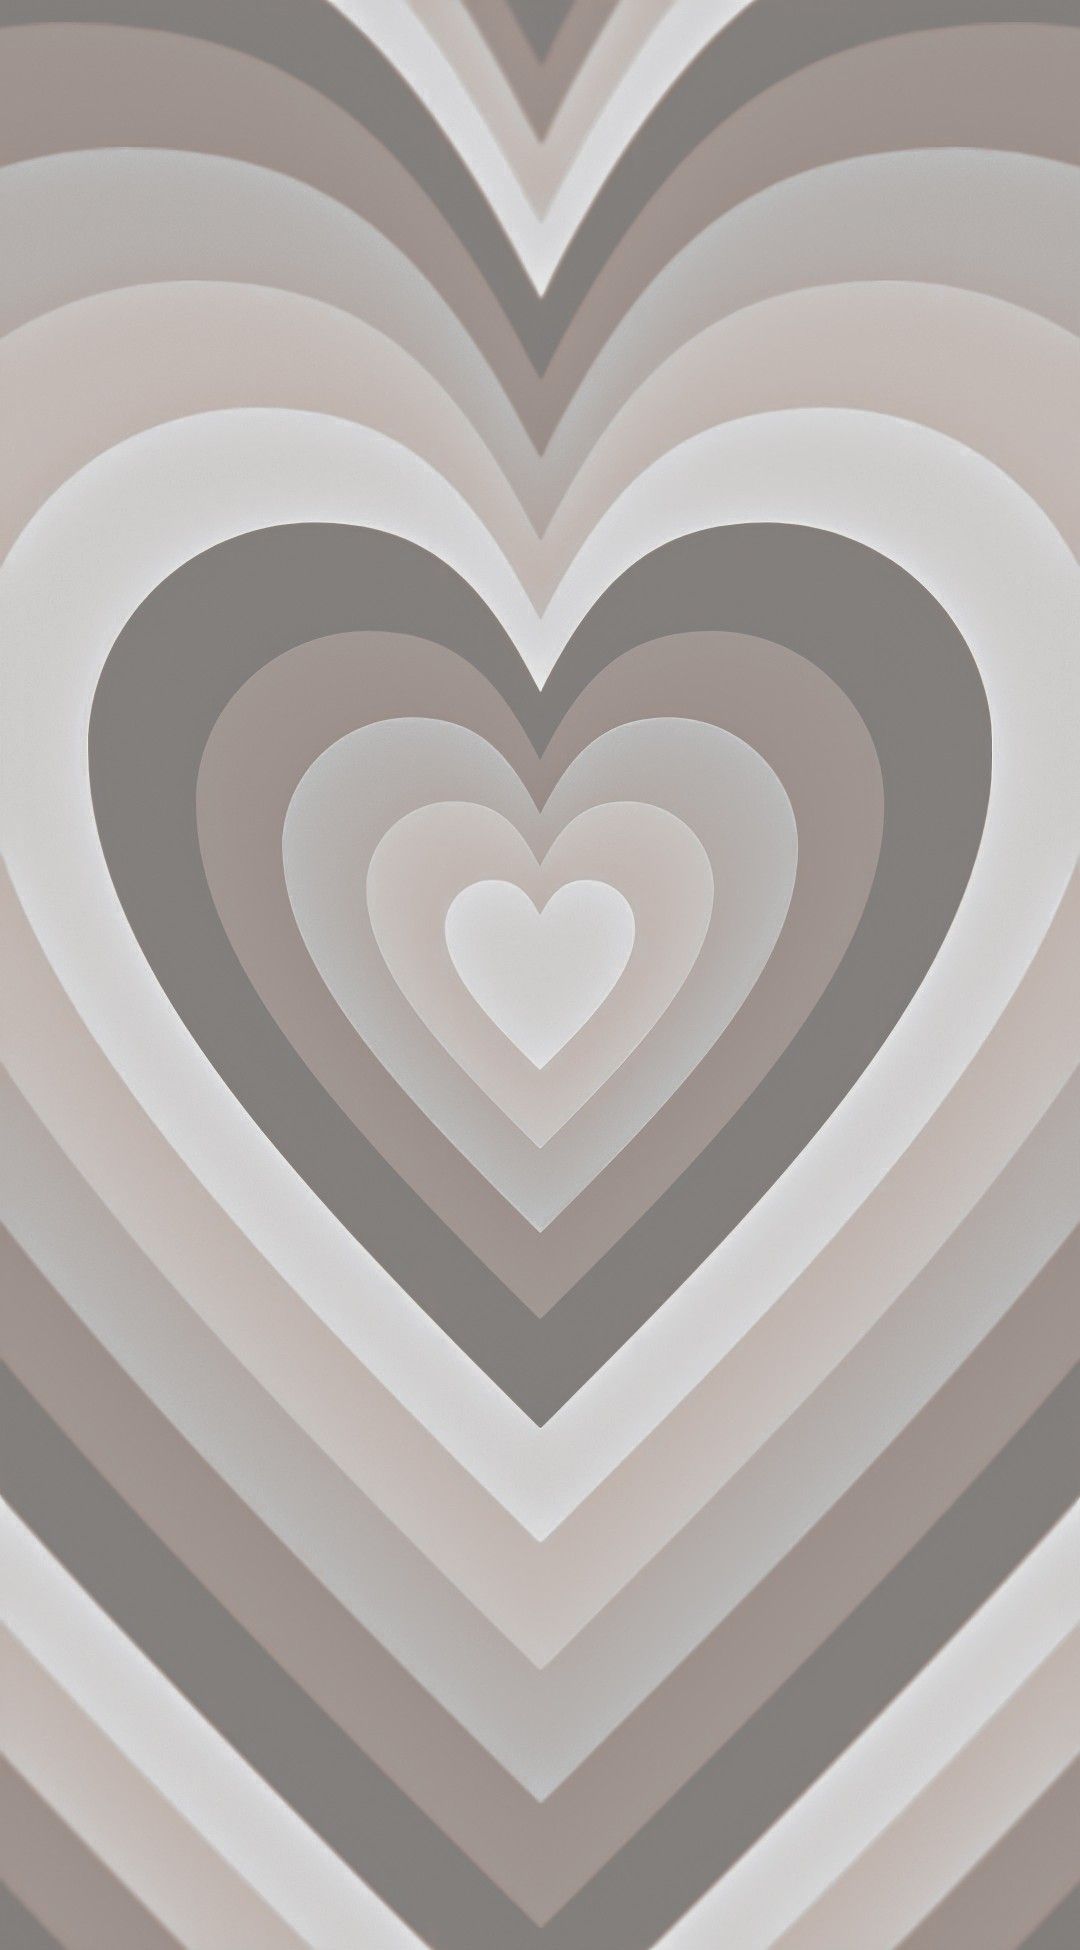 Aesthetic Heart Wallpaper Free Aesthetic Heart Background